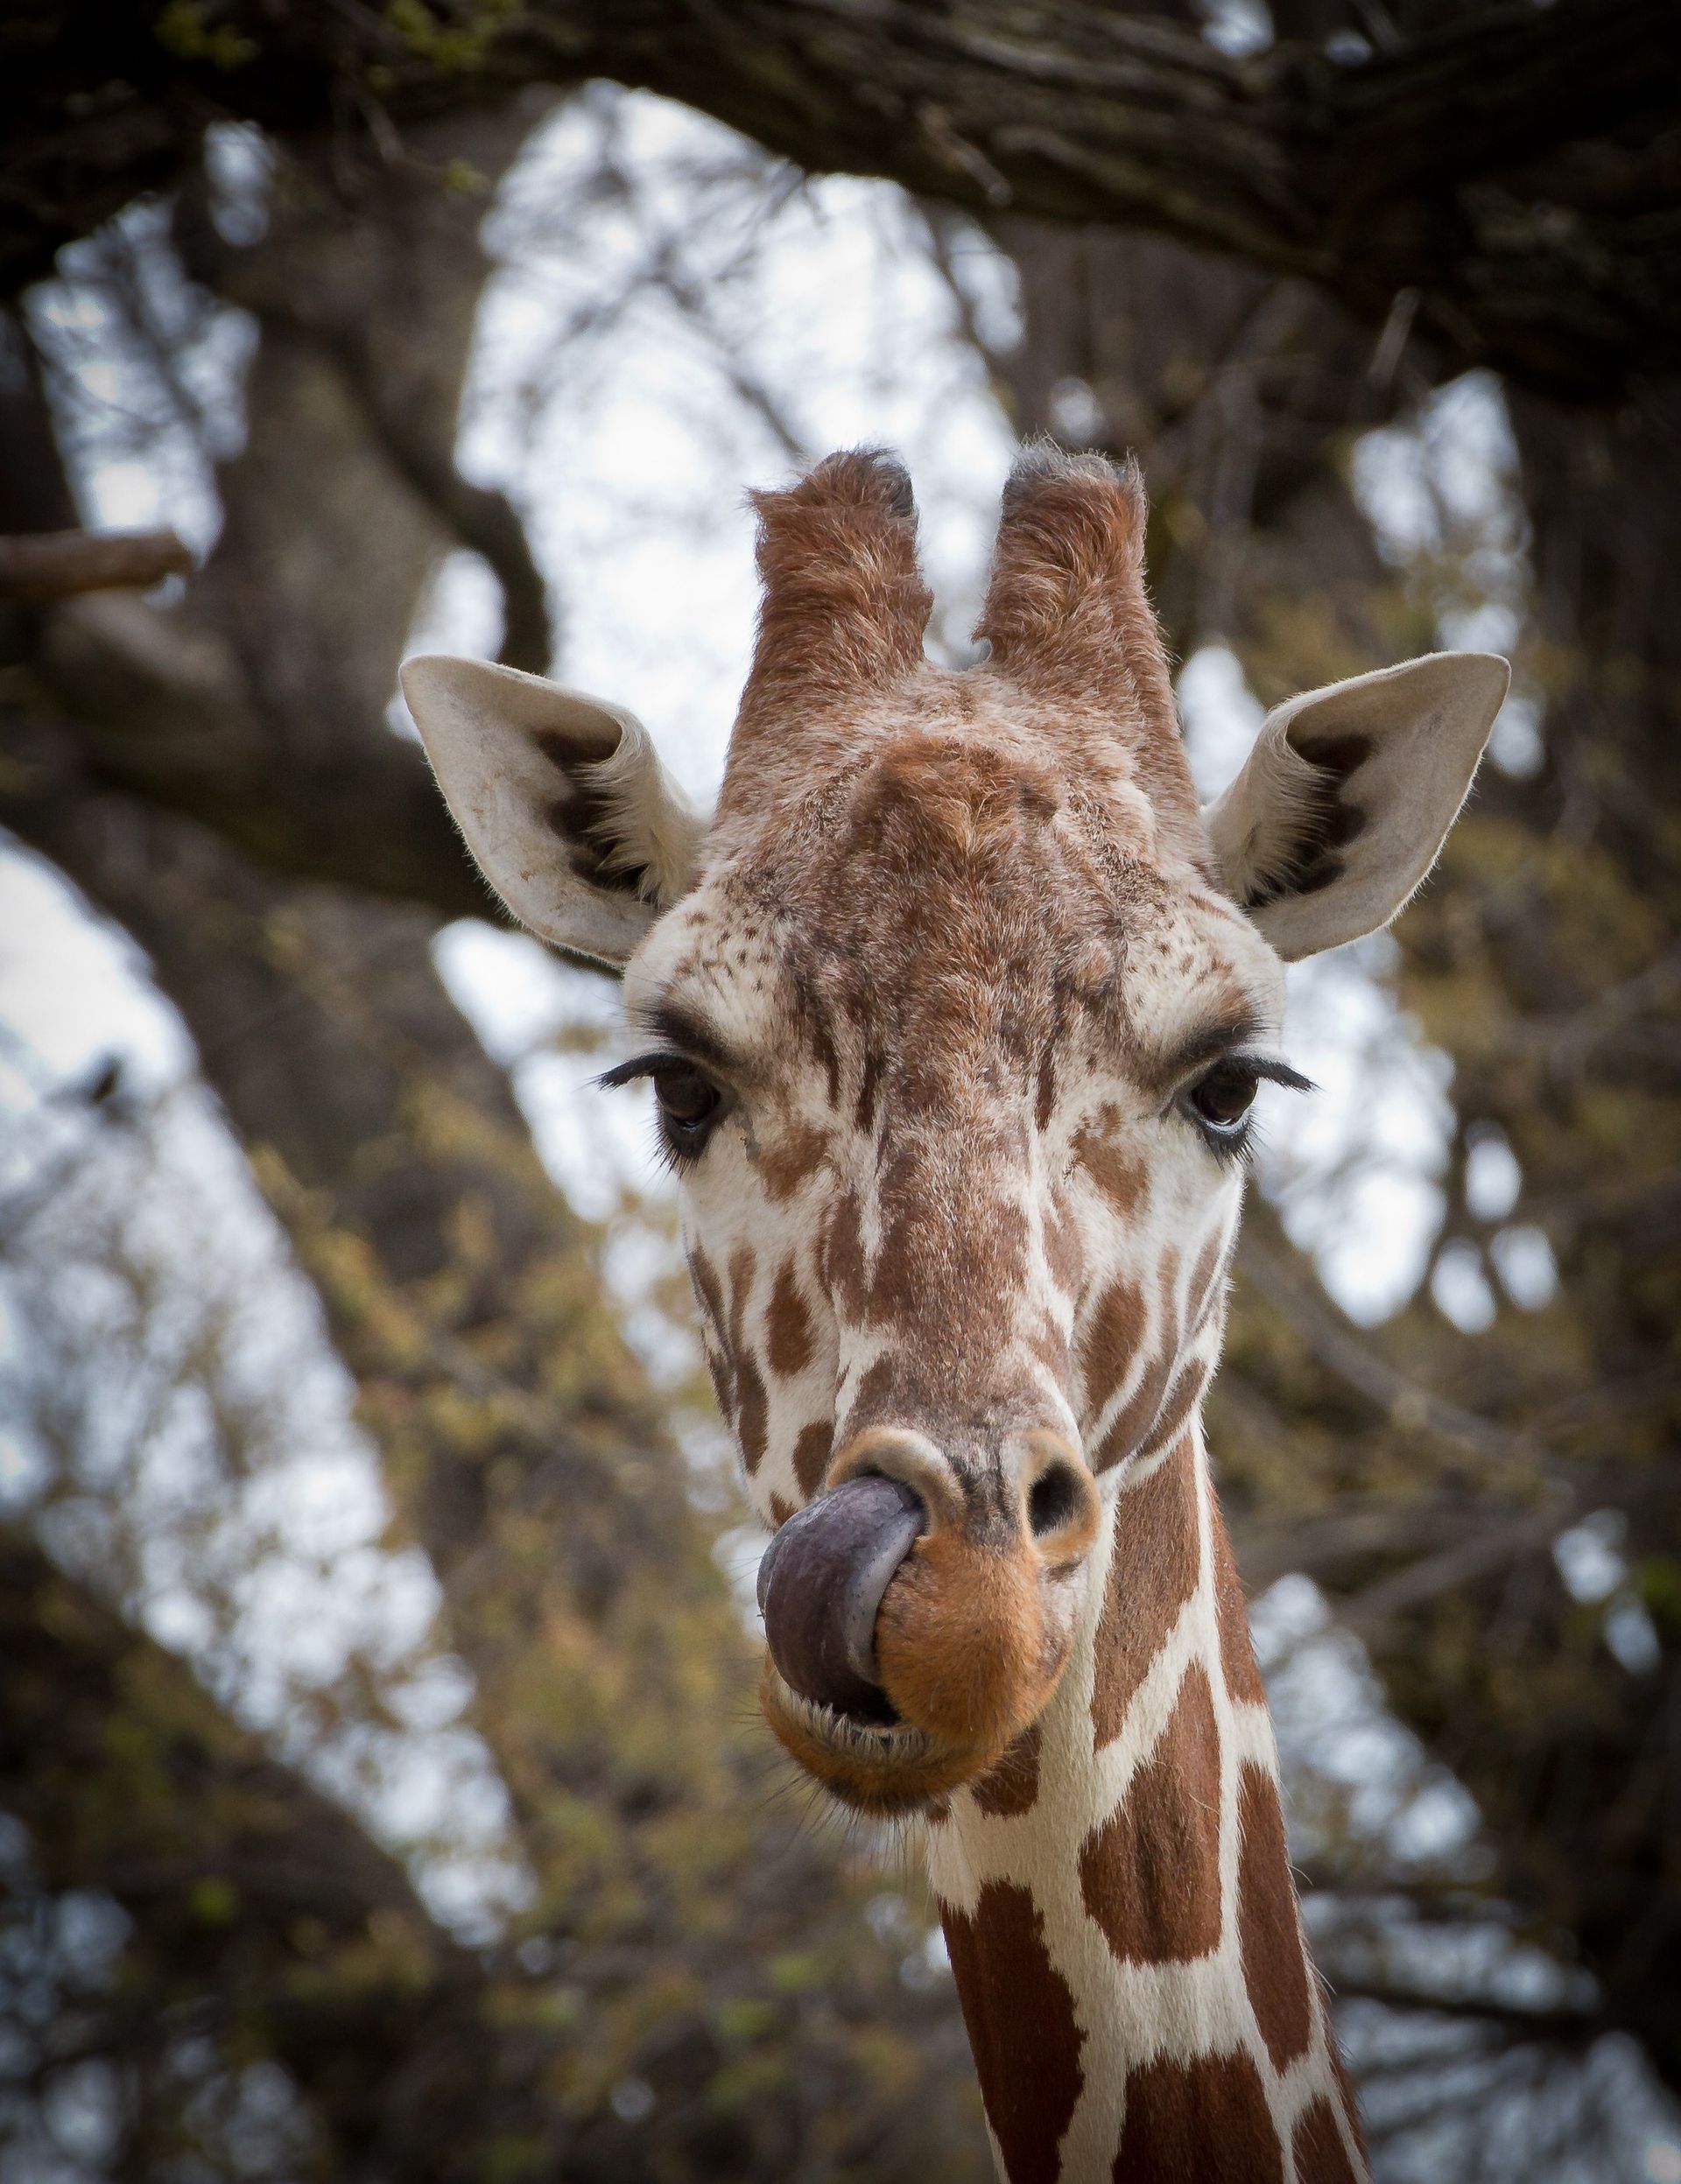 A giraffe licking its nose.